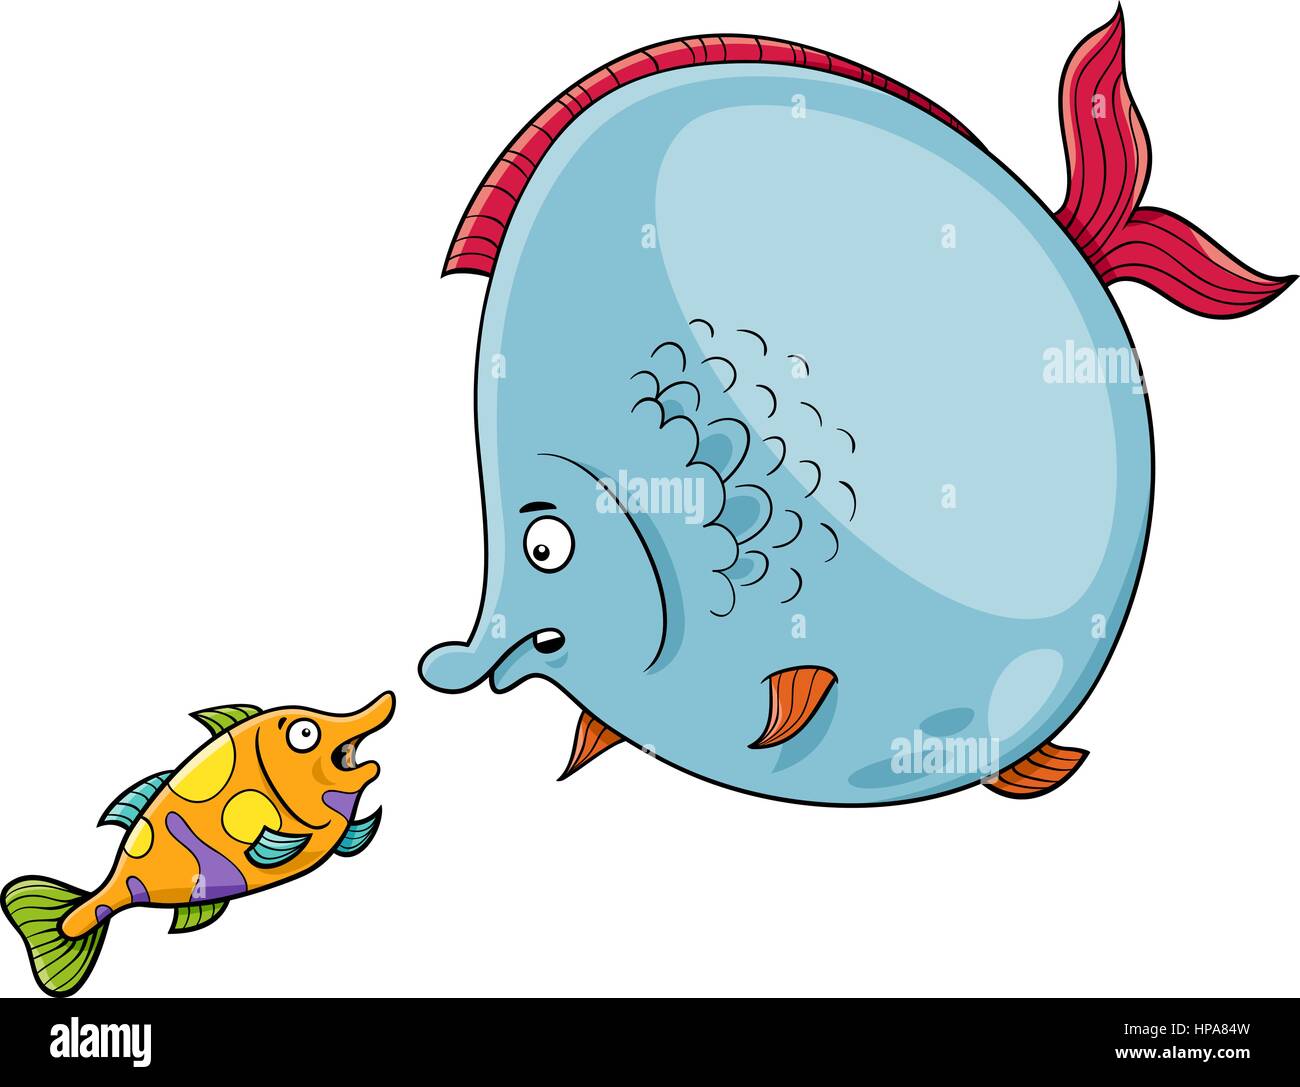 Cartoon-Illustration der großen Fische und kleine Fische tierische Charaktere sprechen Stock Vektor